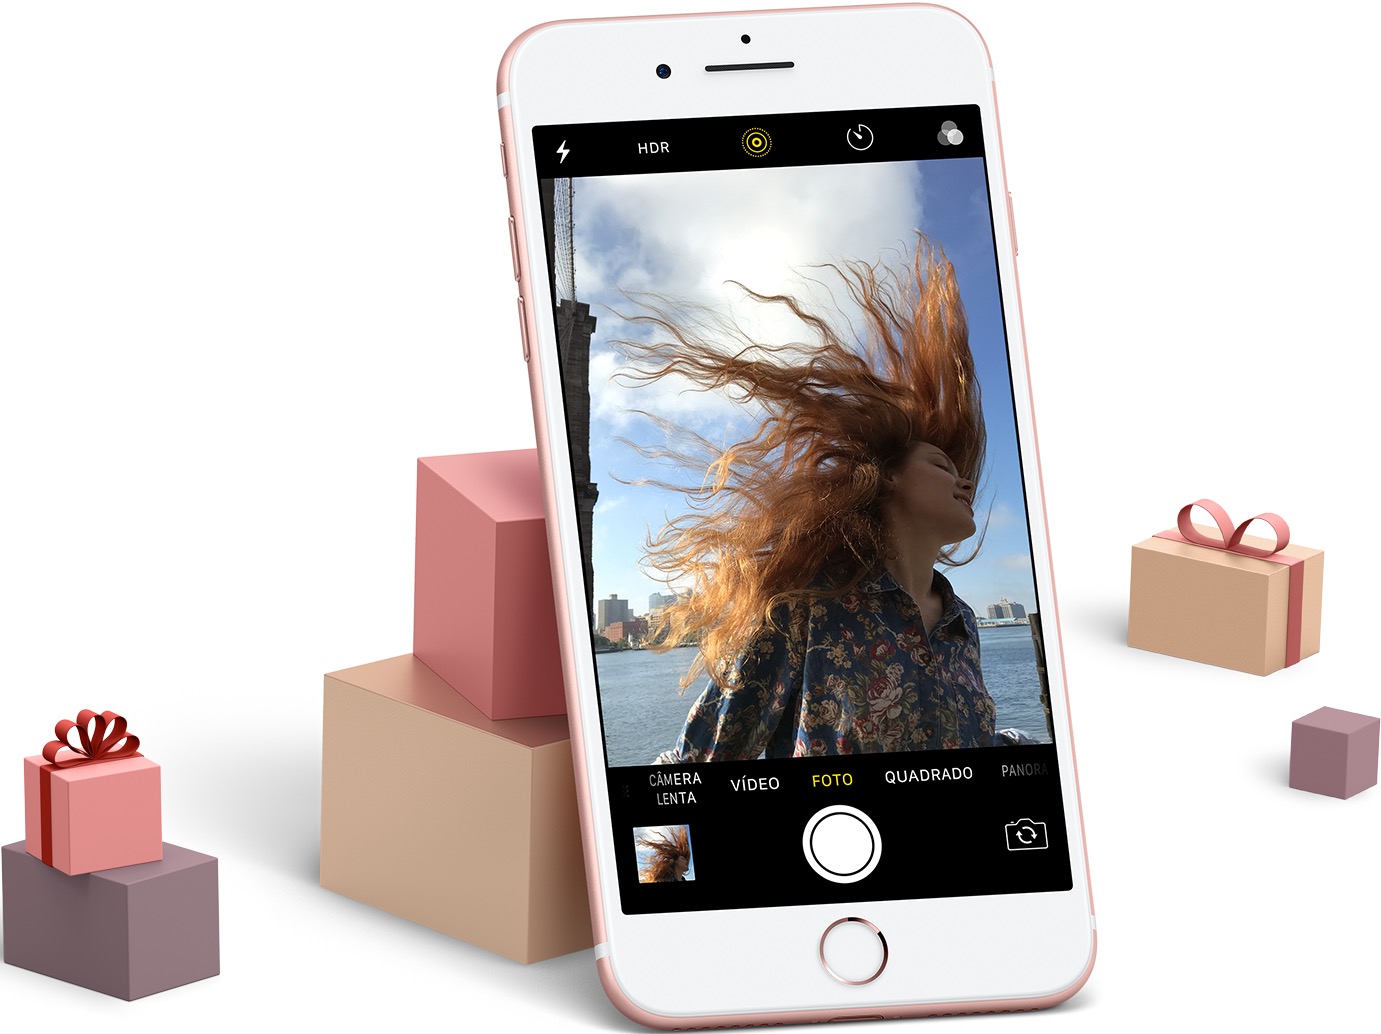 Apple divulgando o iPhone como uma opção de presente de Natal